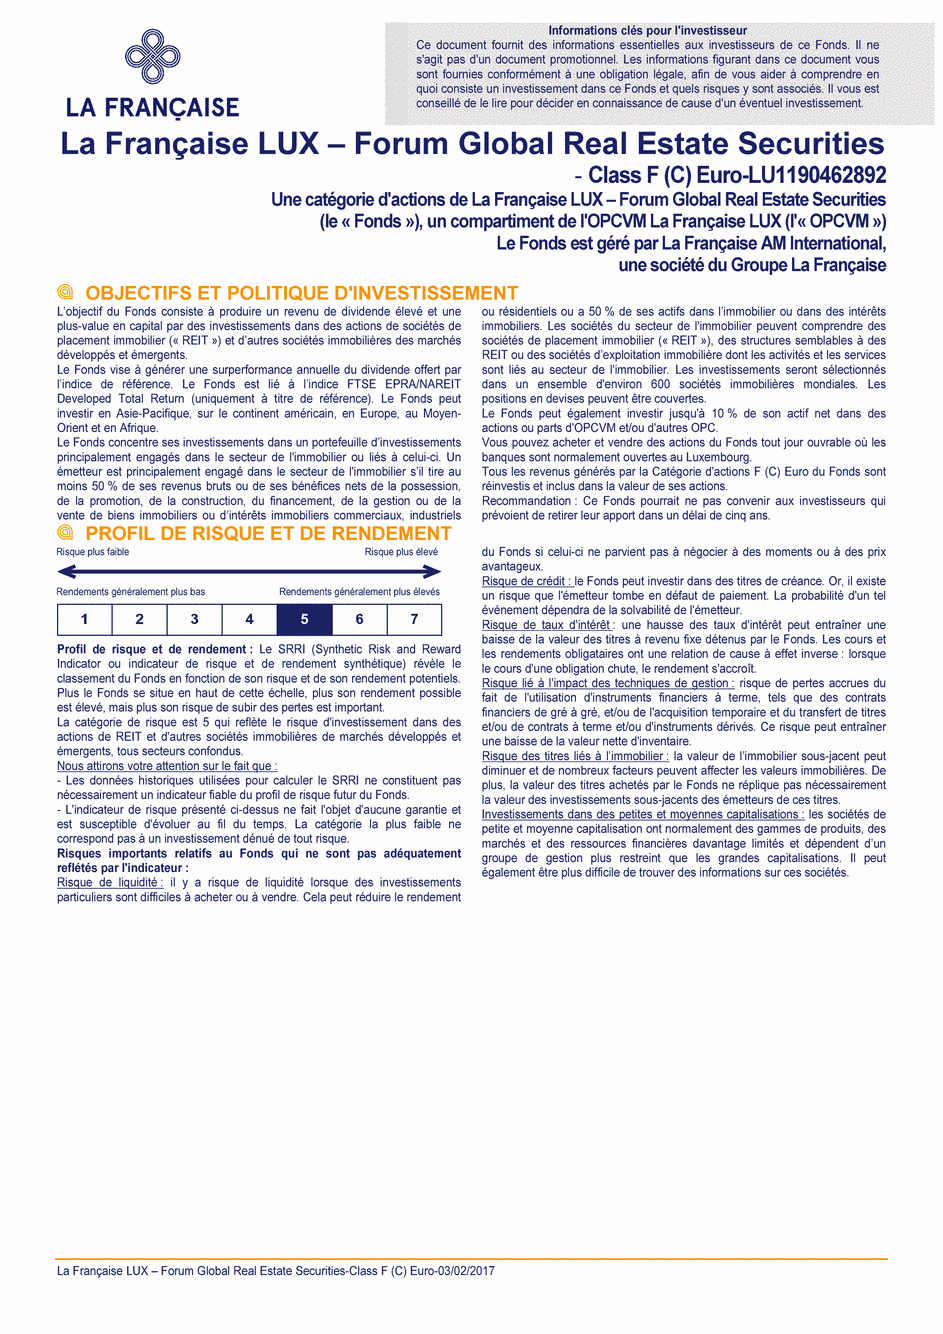 DICI La Française LUX - Forum Global Real Estate Securities - F (C) EUR - 03/02/2017 - Français